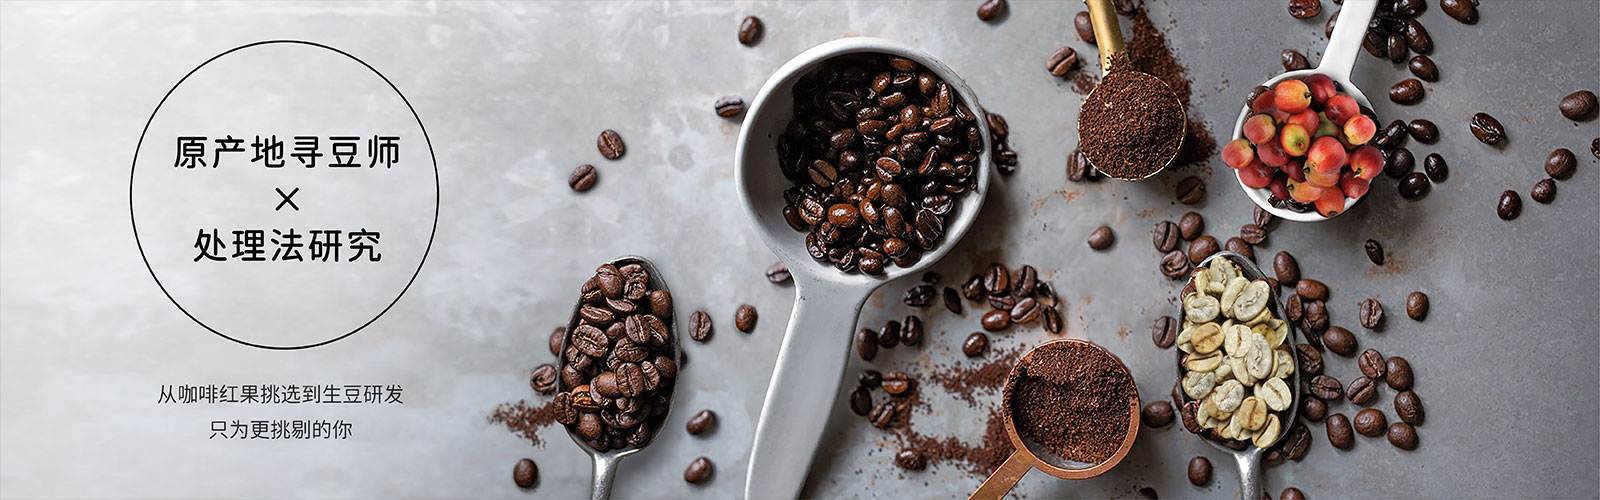 胶囊咖啡-咖啡豆